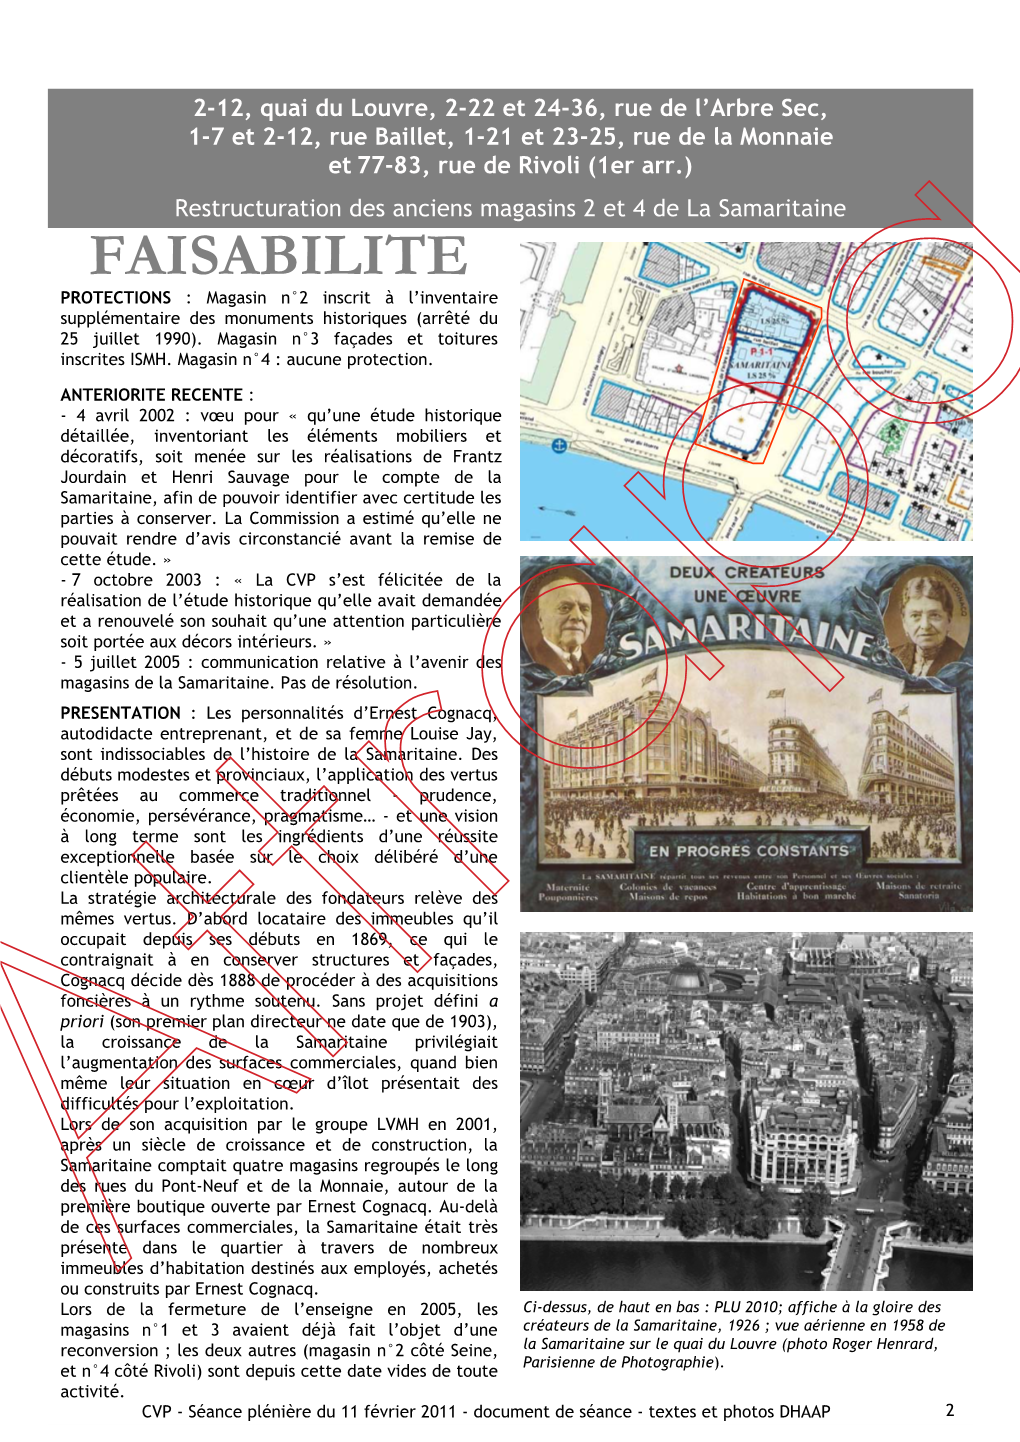 FAISABILITE PROTECTIONS : Magasin N°2 Inscrit À L’Inventaire Supplémentaire Des Monuments Historiques (Arrêté Du 25 Juillet 1990)